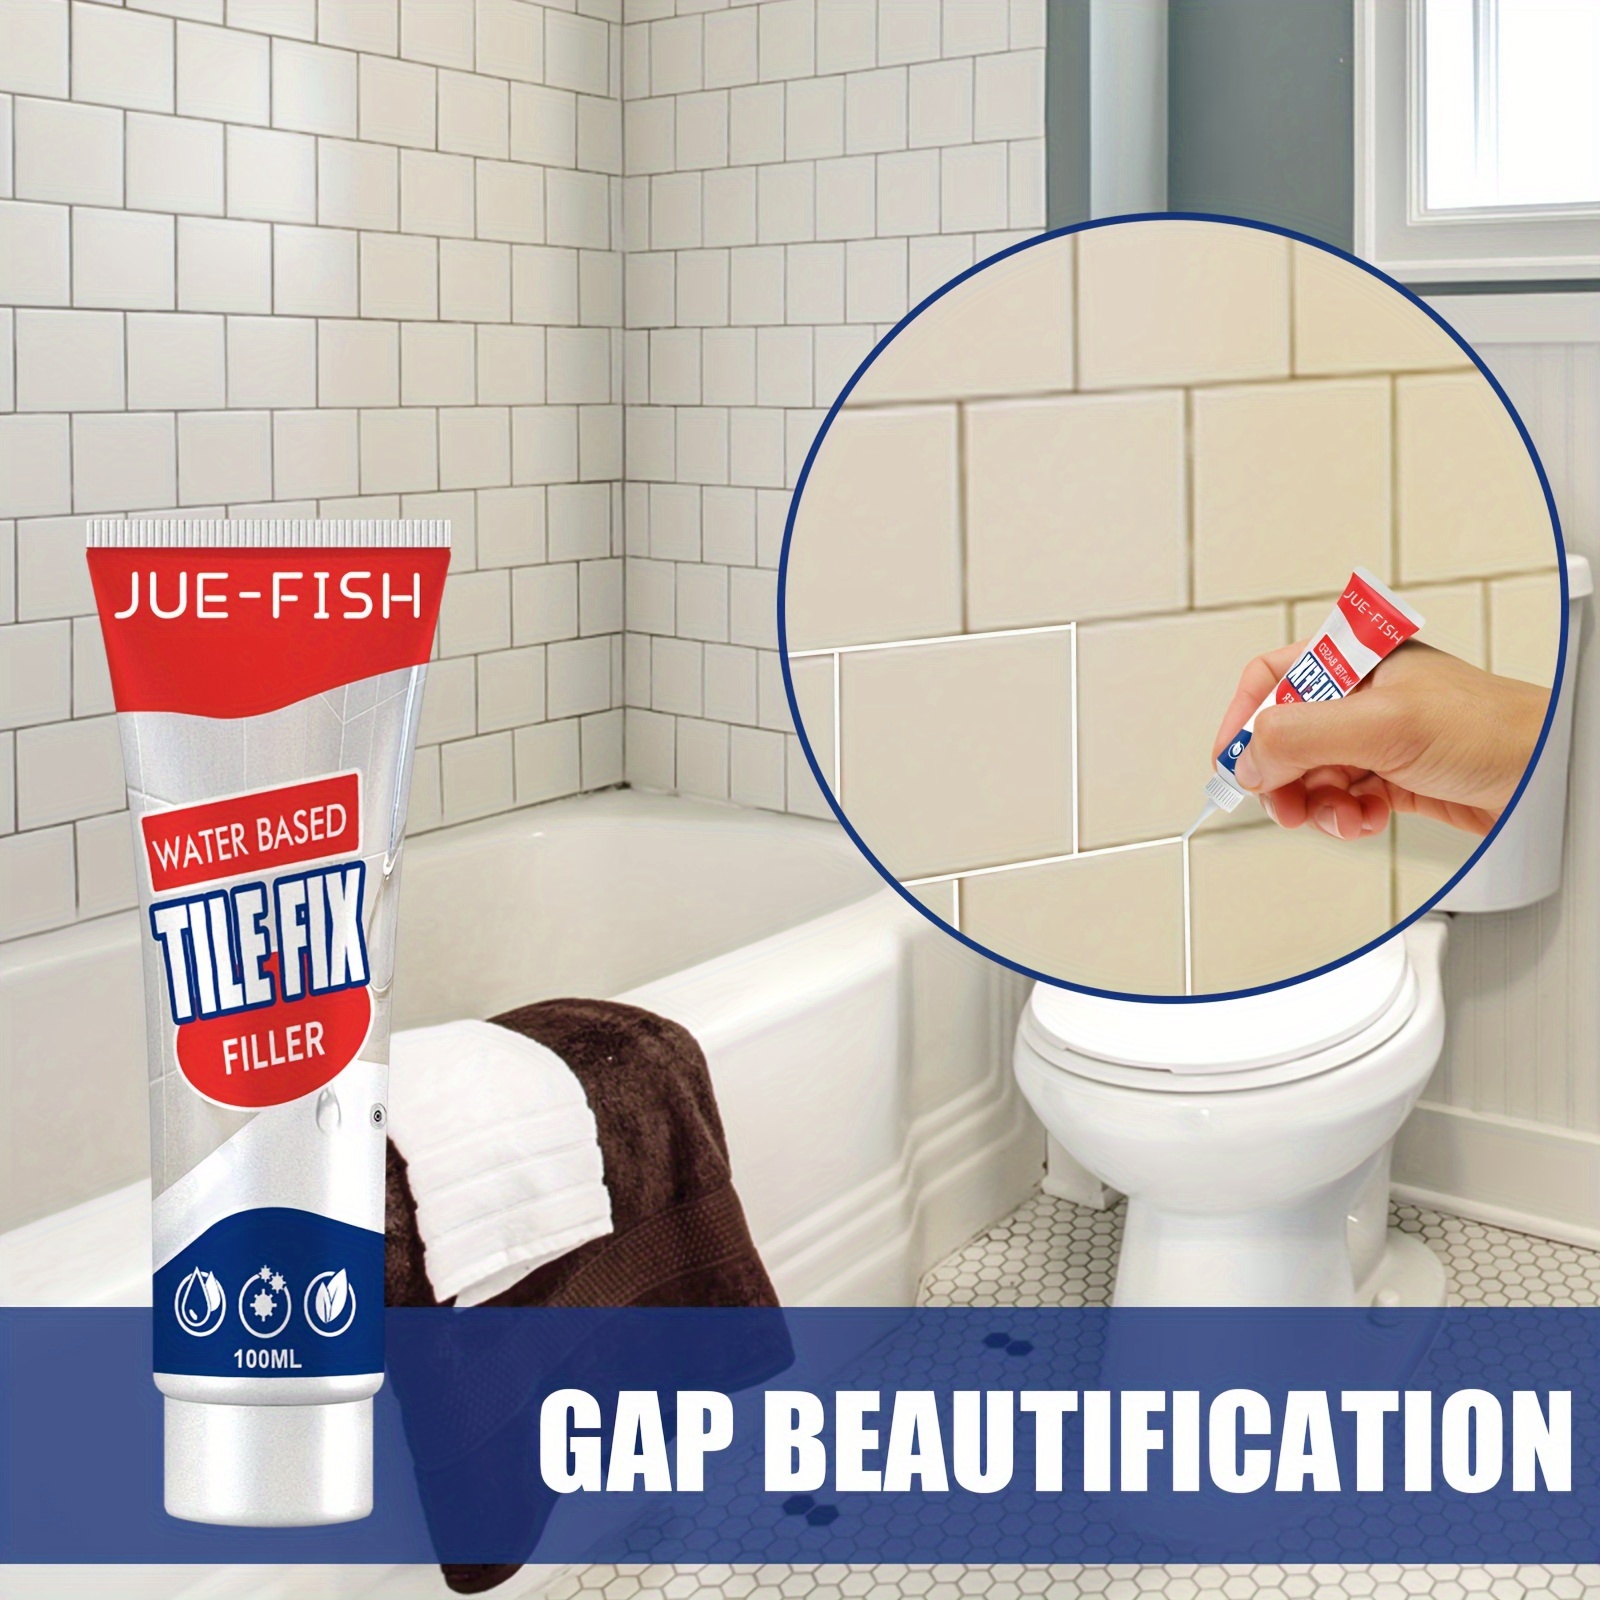 Fastix - ¿Como sellar una filtración entre bañera y azulejos? 